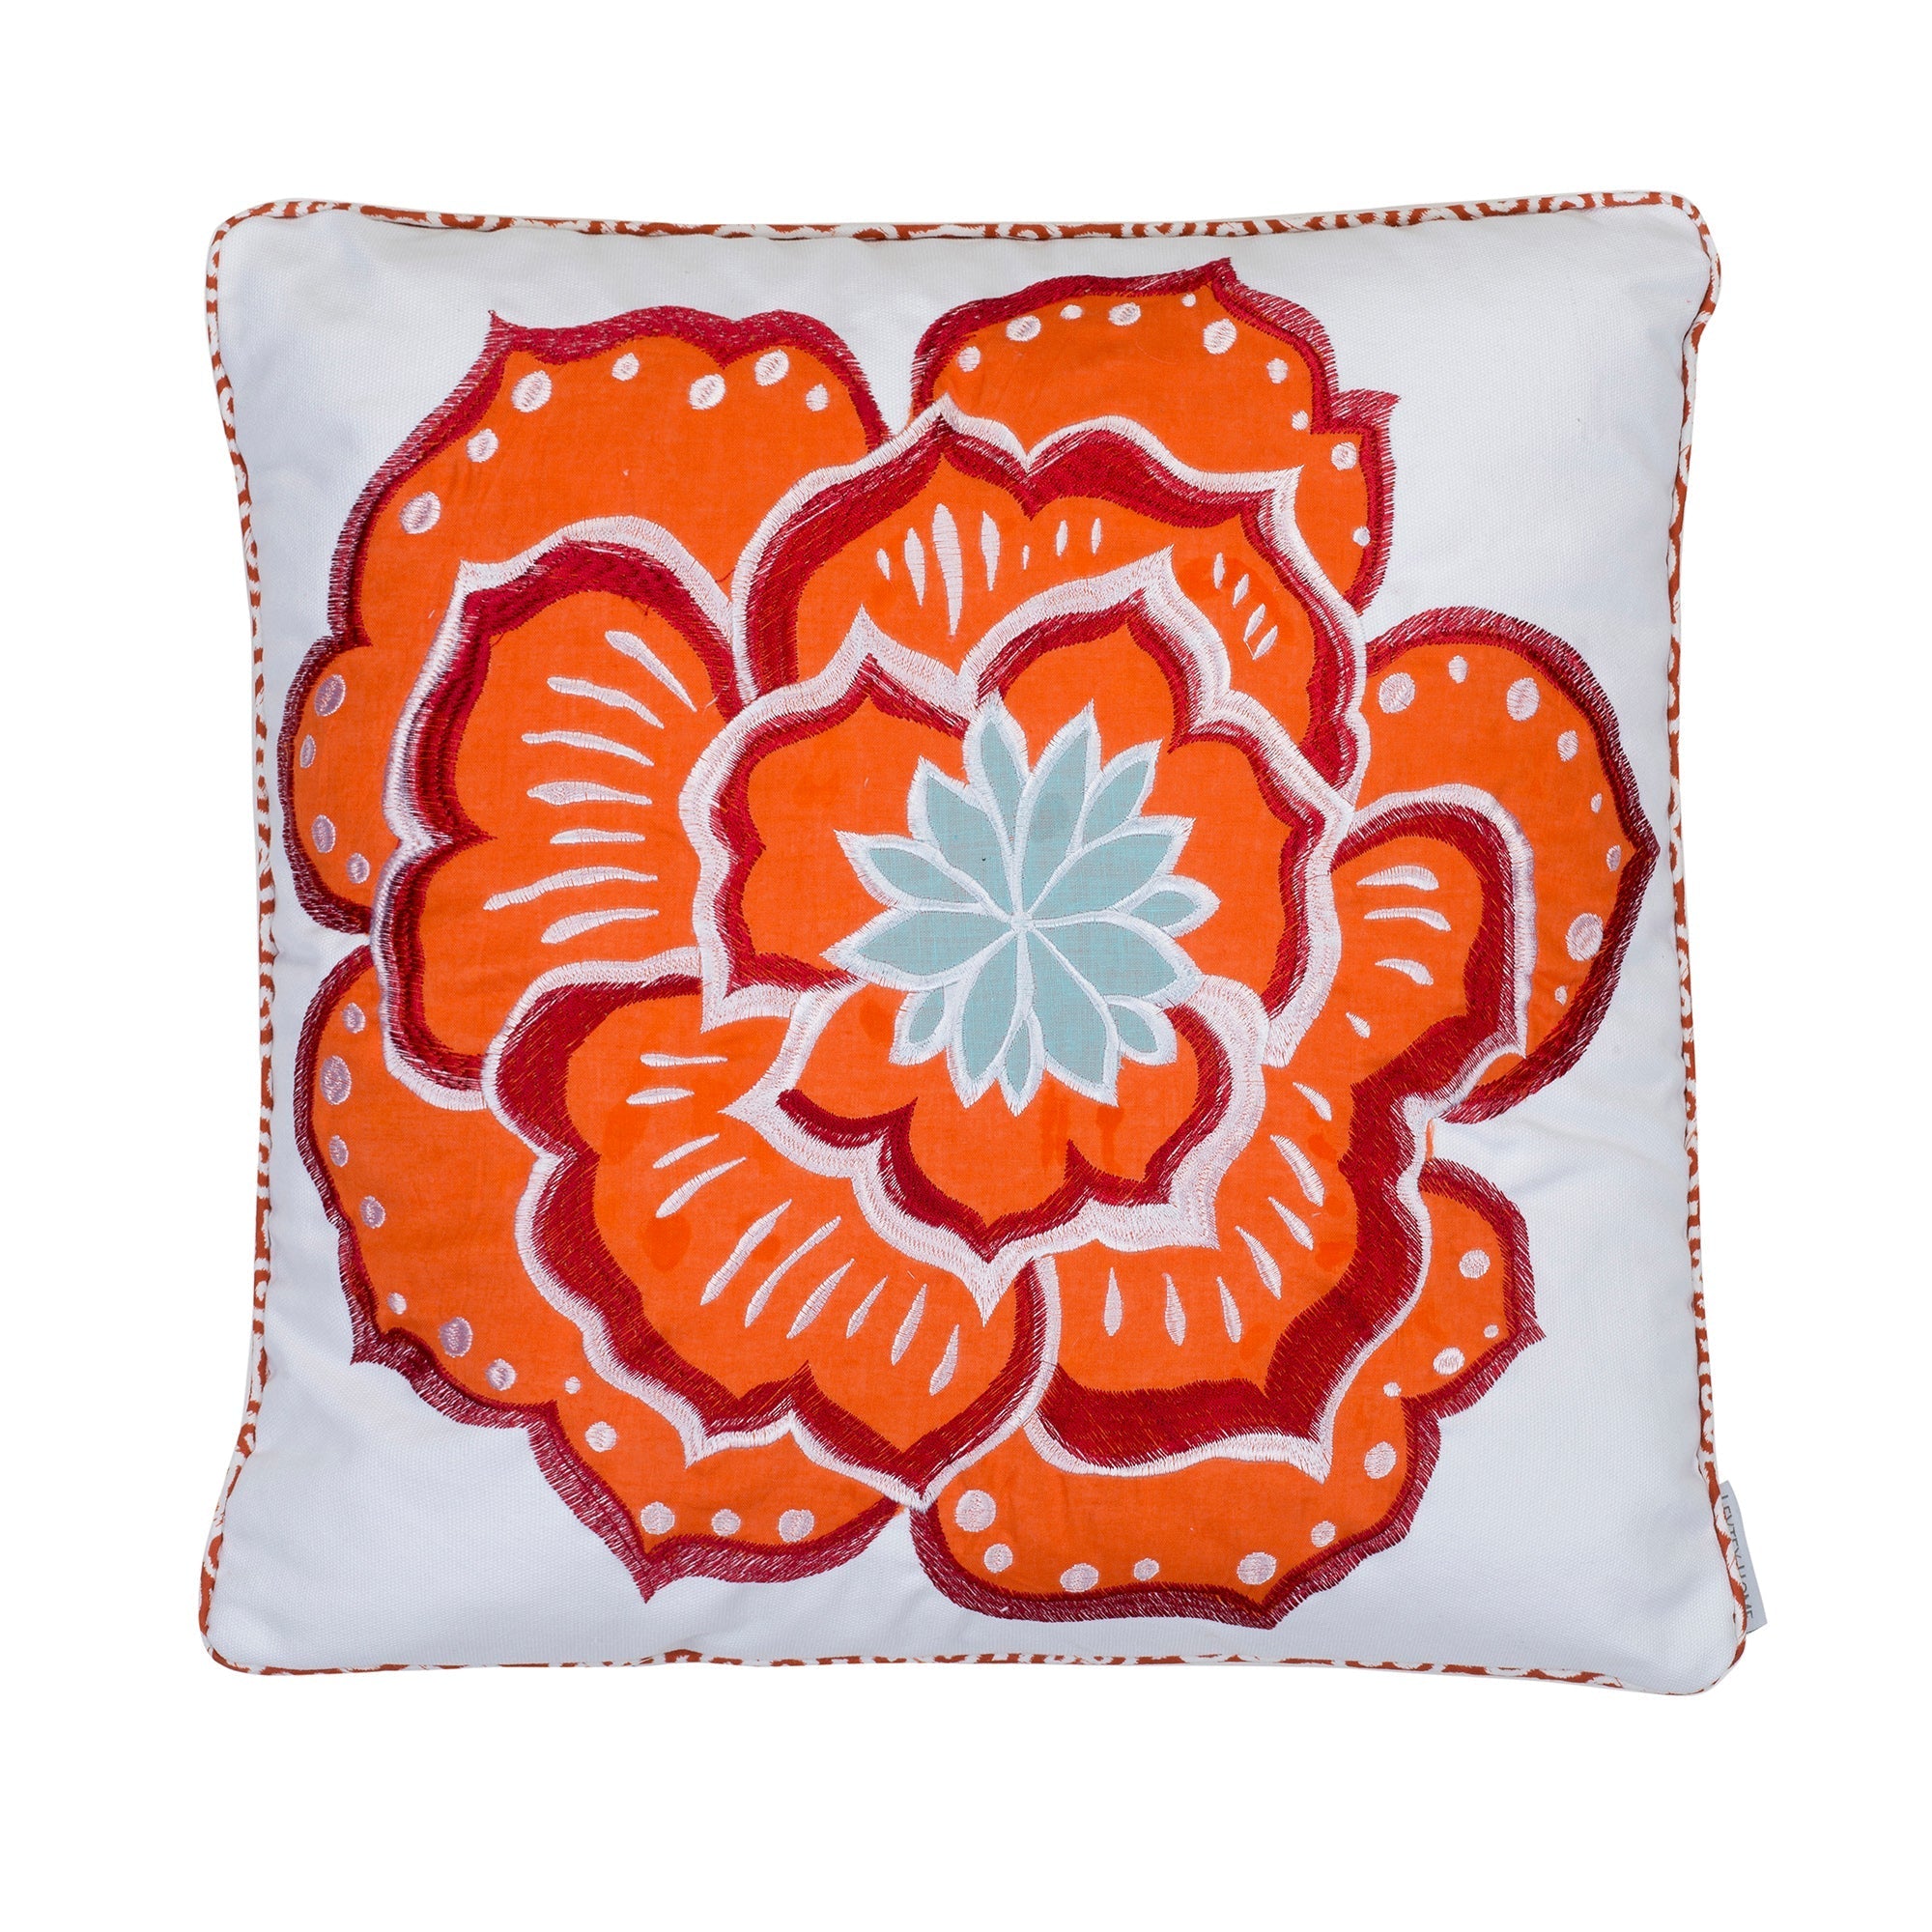 Abigail Flower Pillow